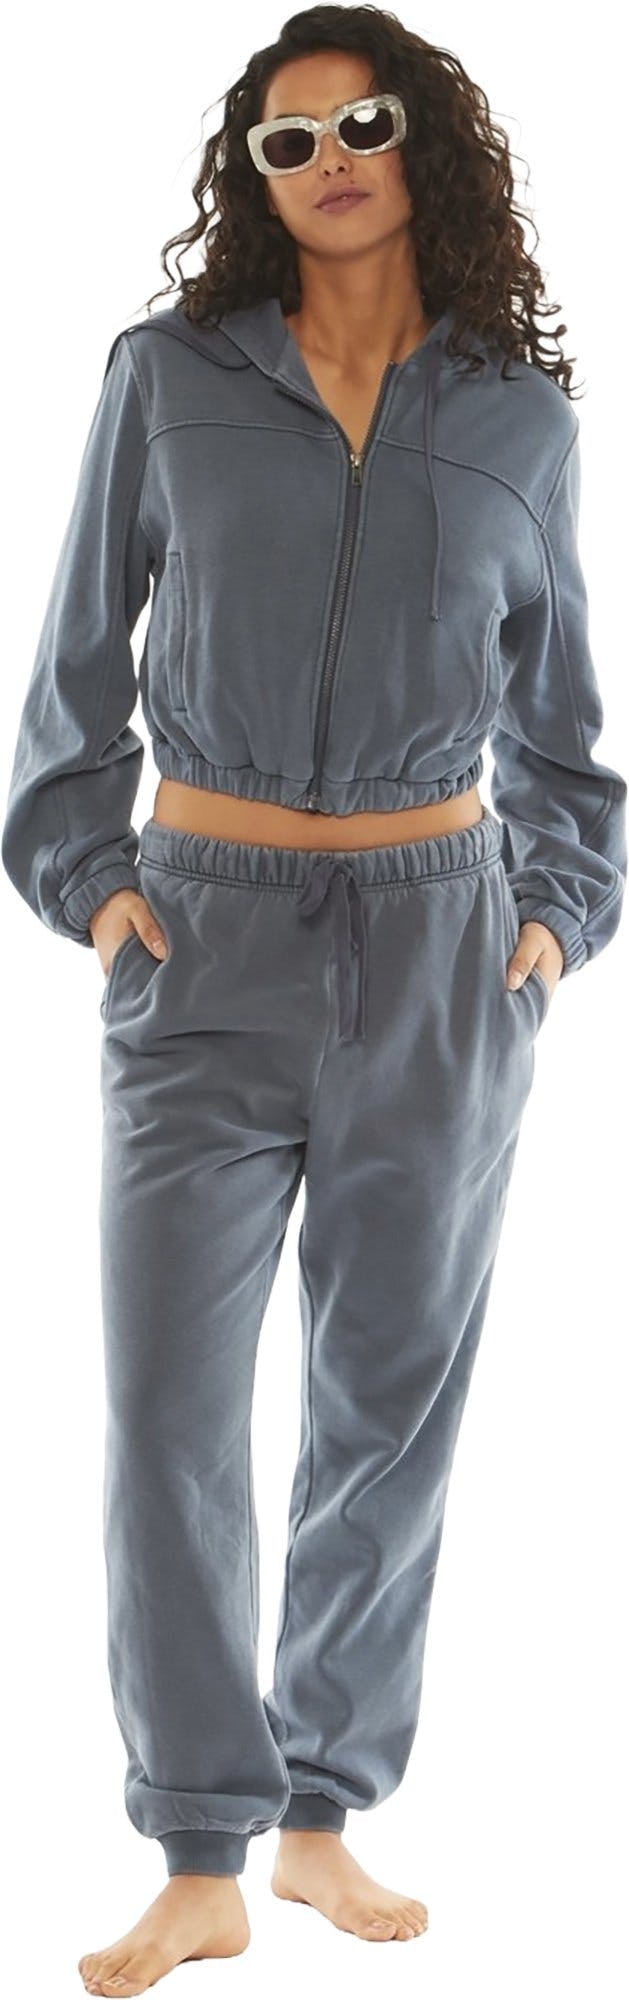 Image de produit pour Pantalon en tricot Typhoon - Femme